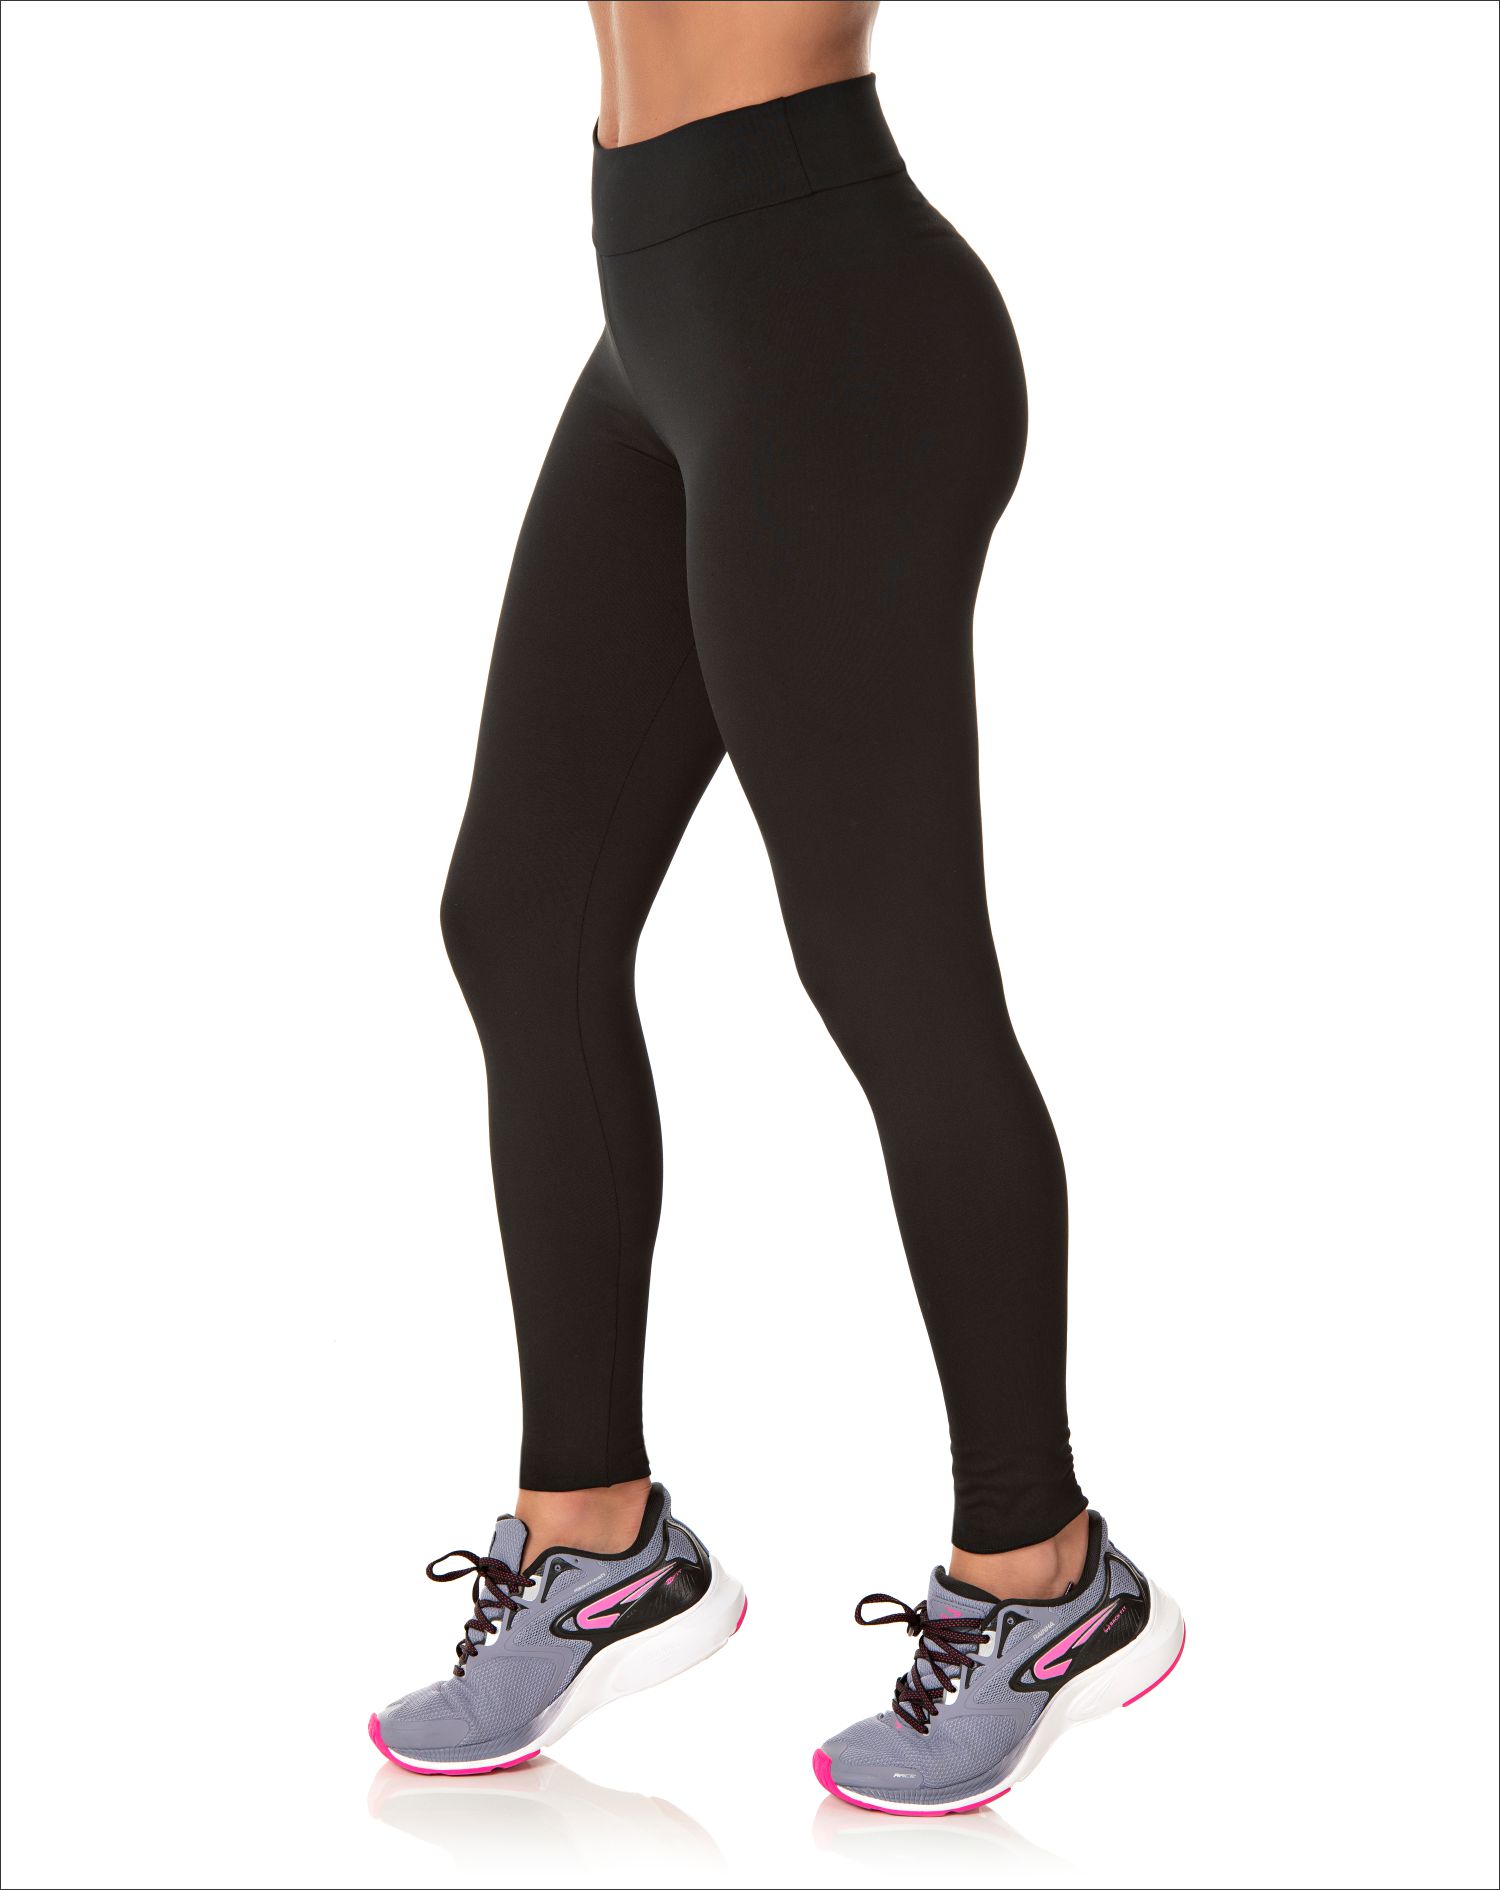 https://www.lojamirante.com.br/uploads/produtos/calca-legging-fitness-feminina-preta-6202a8b2939d8.jpg